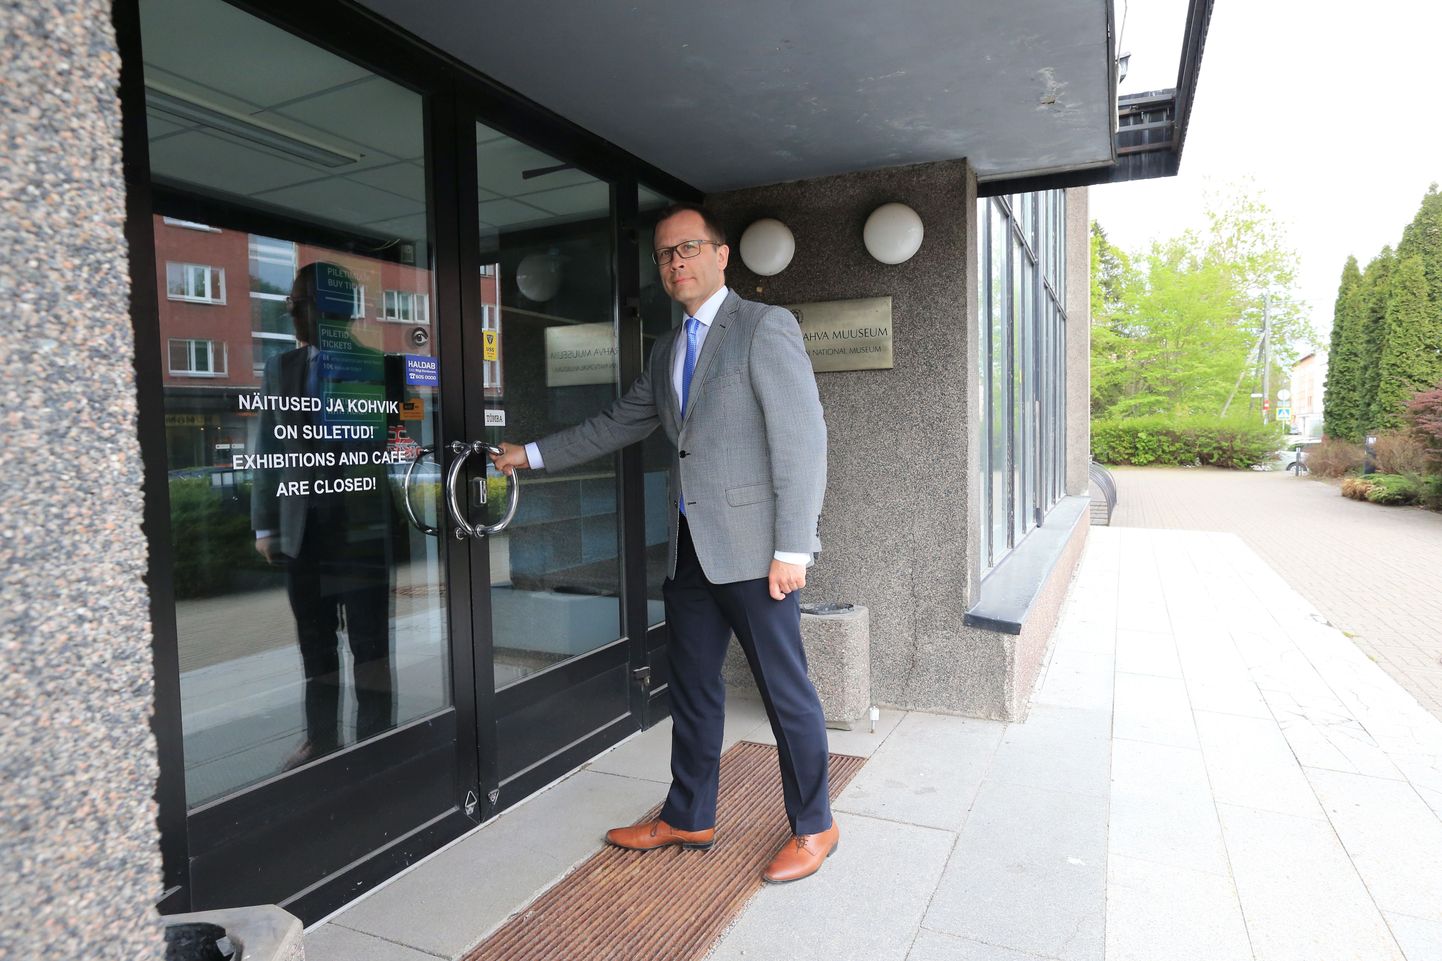 Kui valitsuskabinet minister Aabi otsuse heaks kiidab, võib Tartu linnapea Urmas Klaas julgelt ERMi endise näitusemaja uksest sisse astuda.